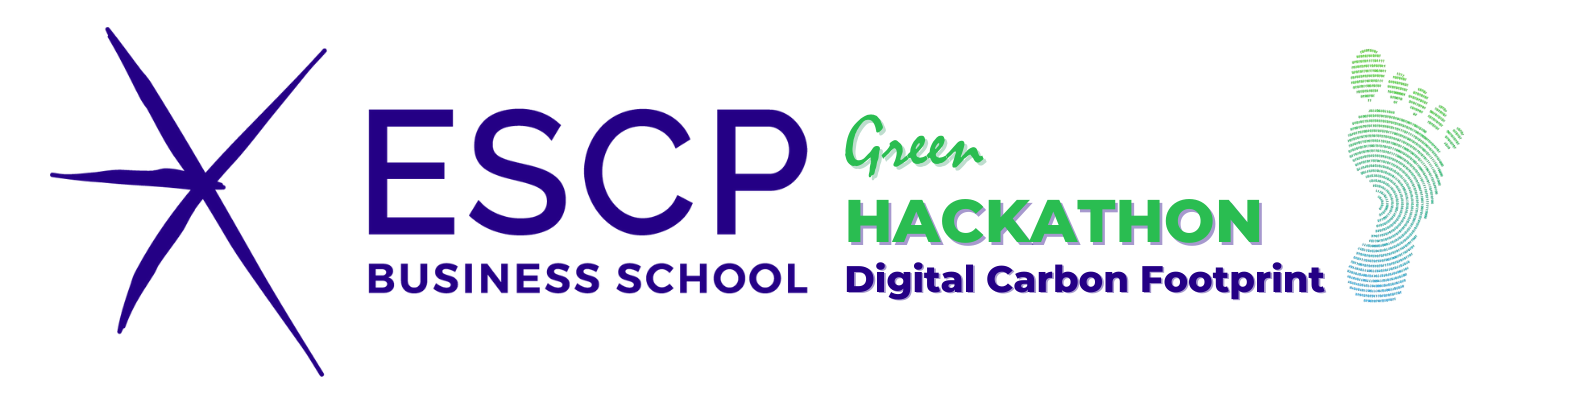 ESCP Green Hackathon | Digital Carbon Footprint, November 9th, 9 am - 6 pm (CET).